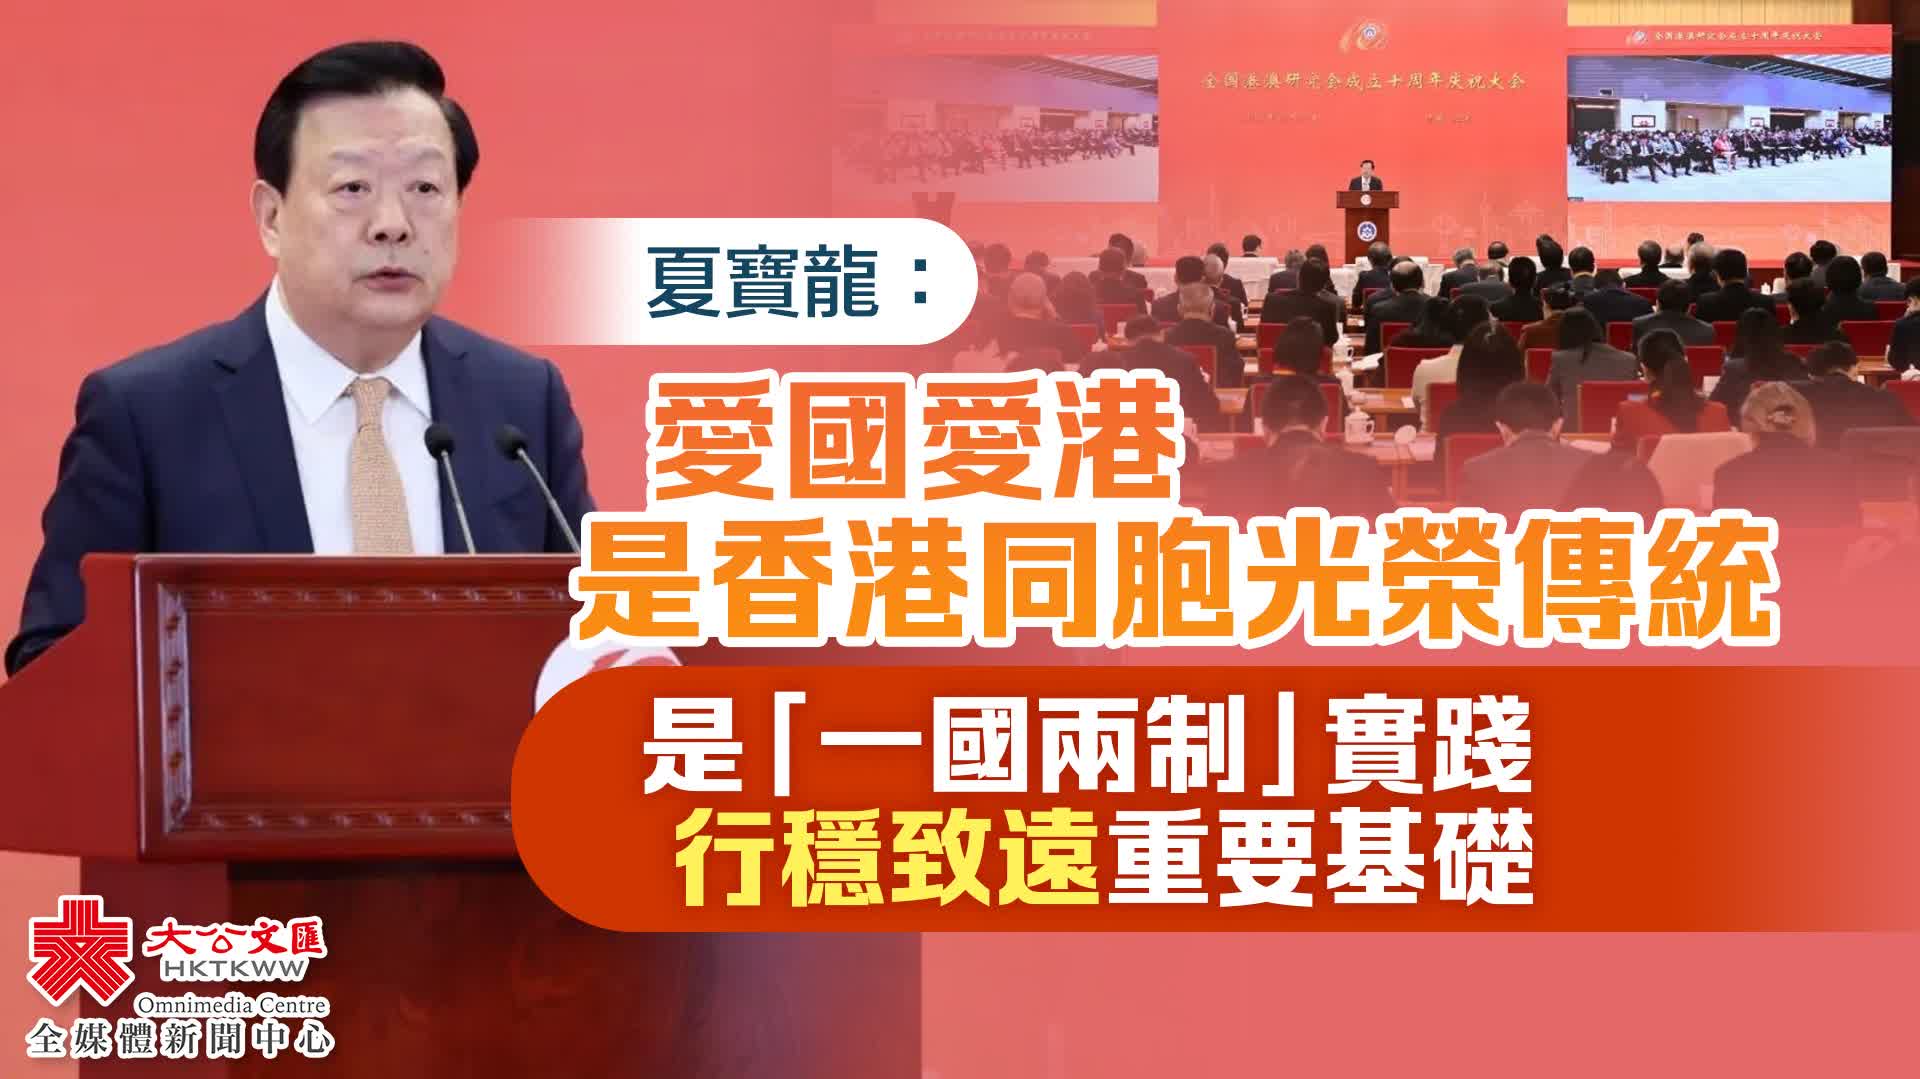 （有片）夏寶龍：愛國愛港是香港同胞光榮傳統　是「一國兩制」實踐行穩致遠重要基礎